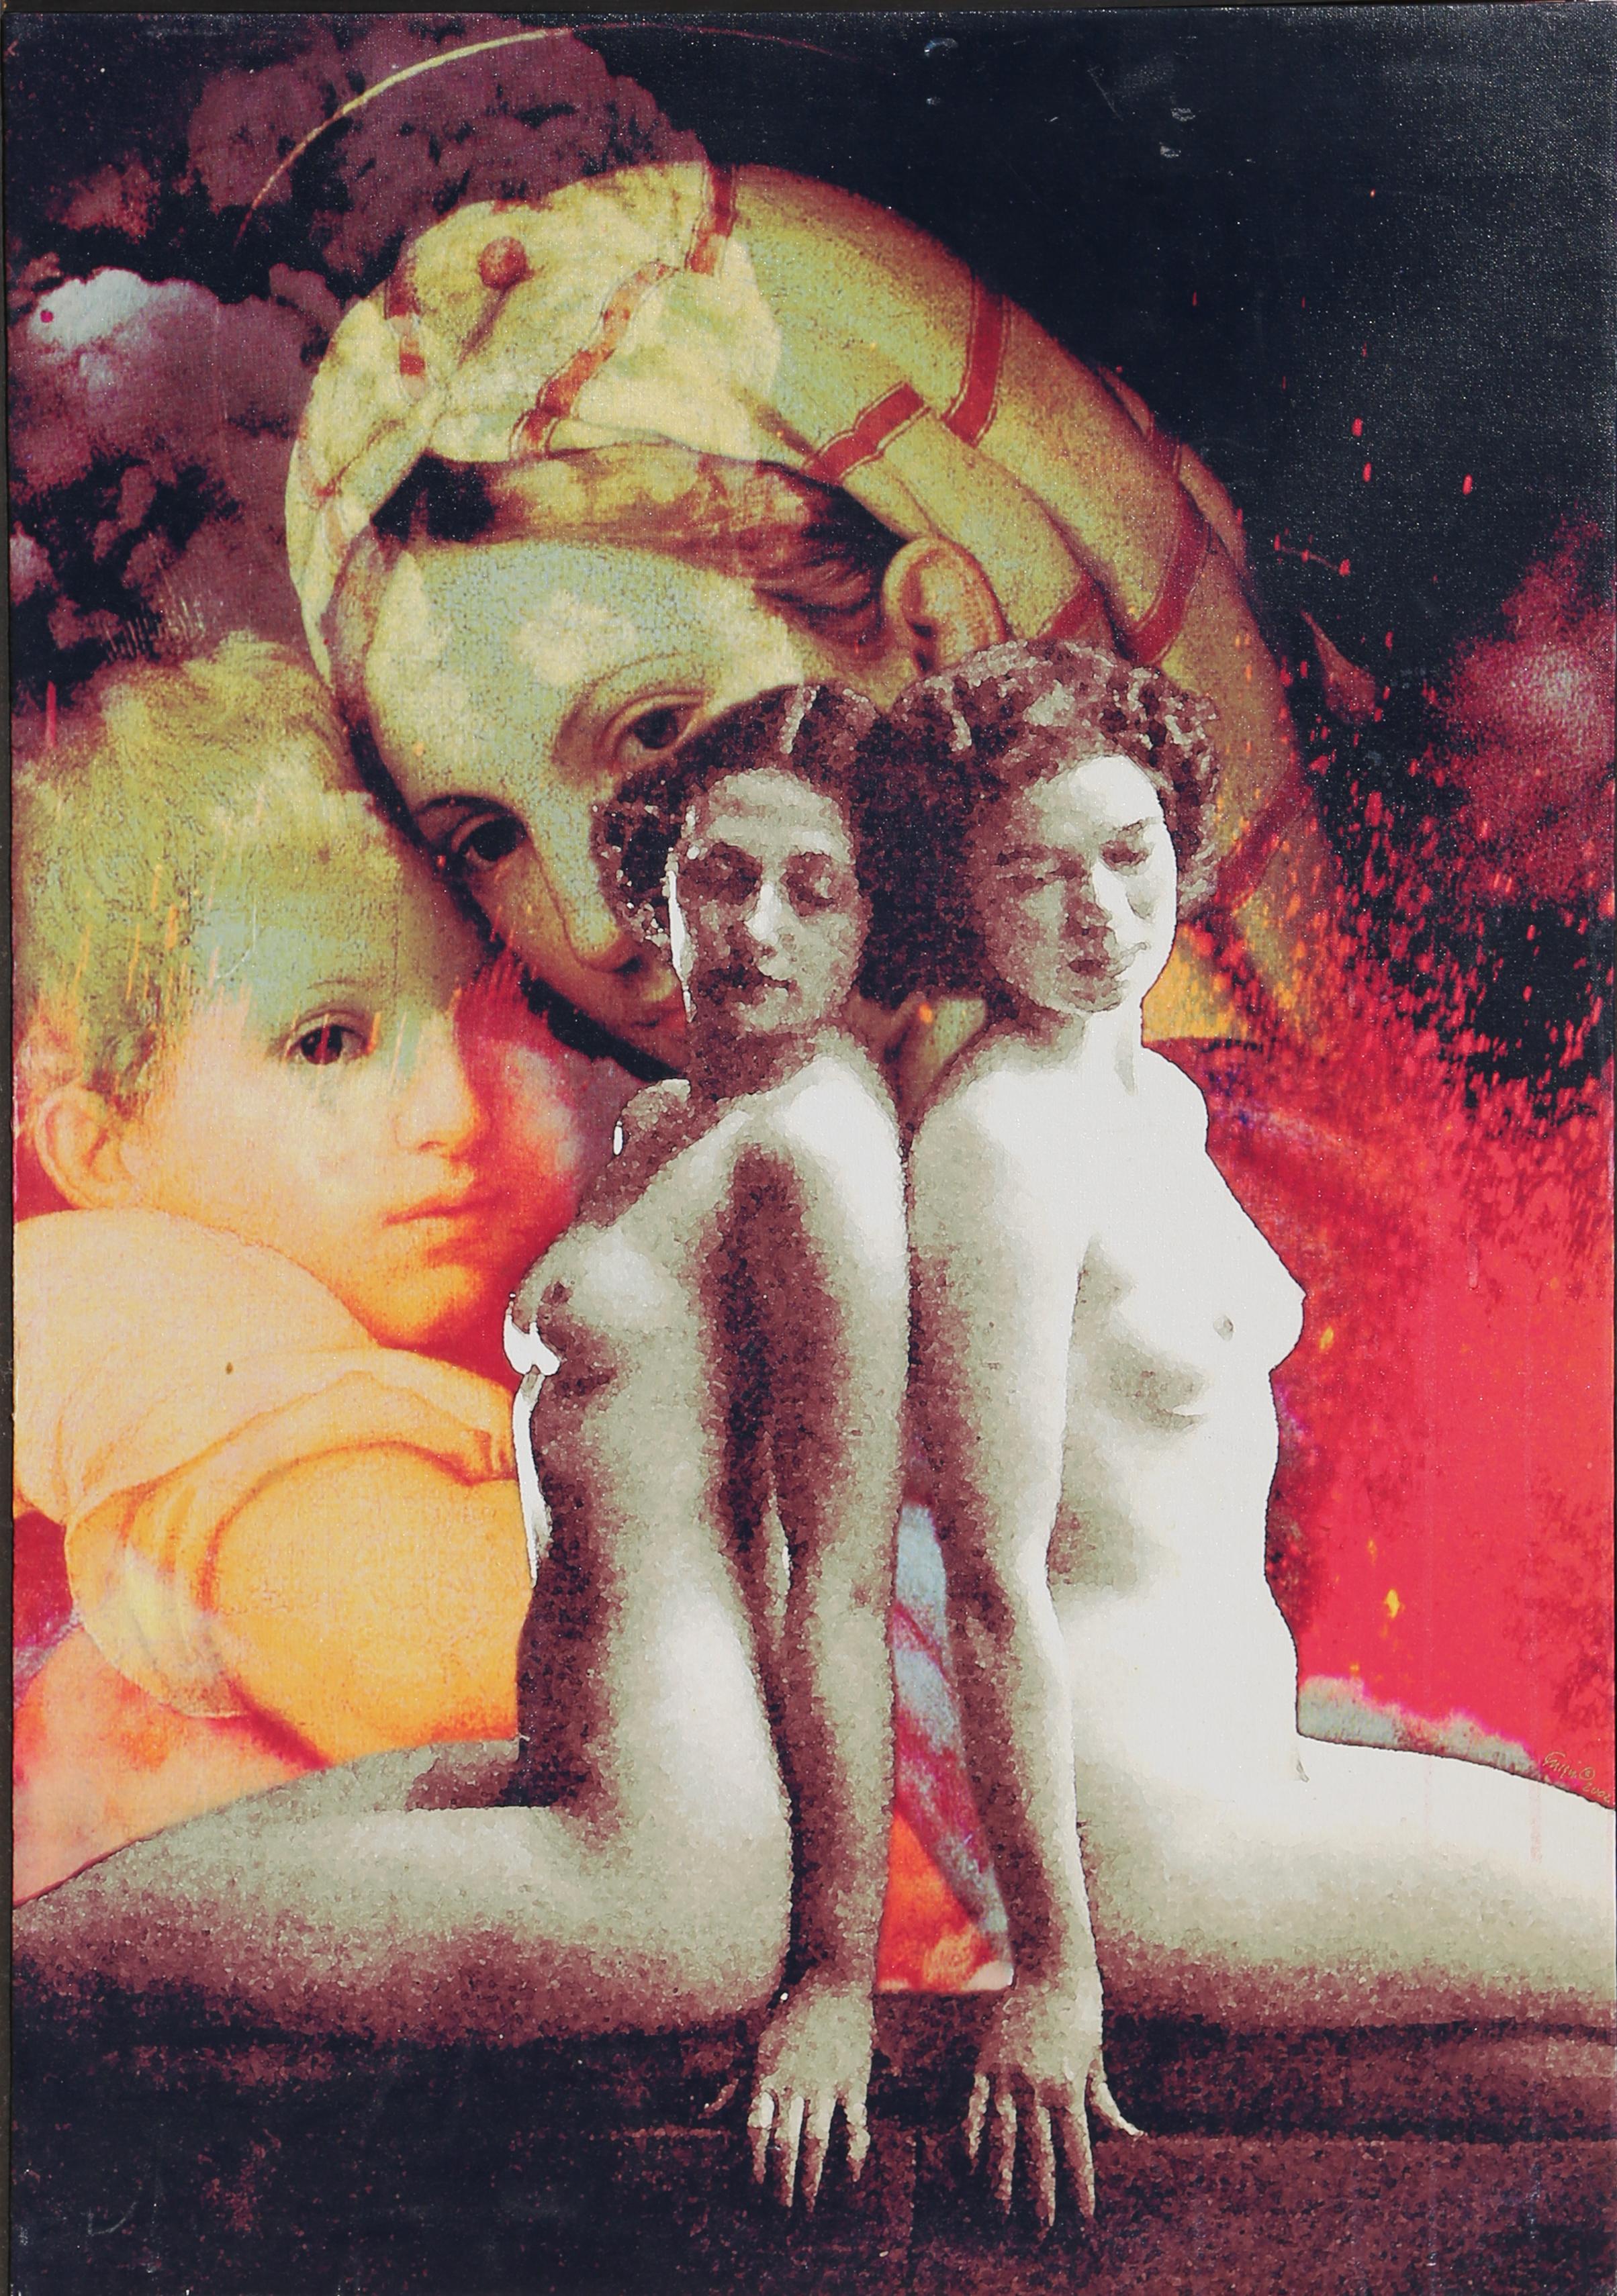 Michael Knigin Nude Print - Fight for Love